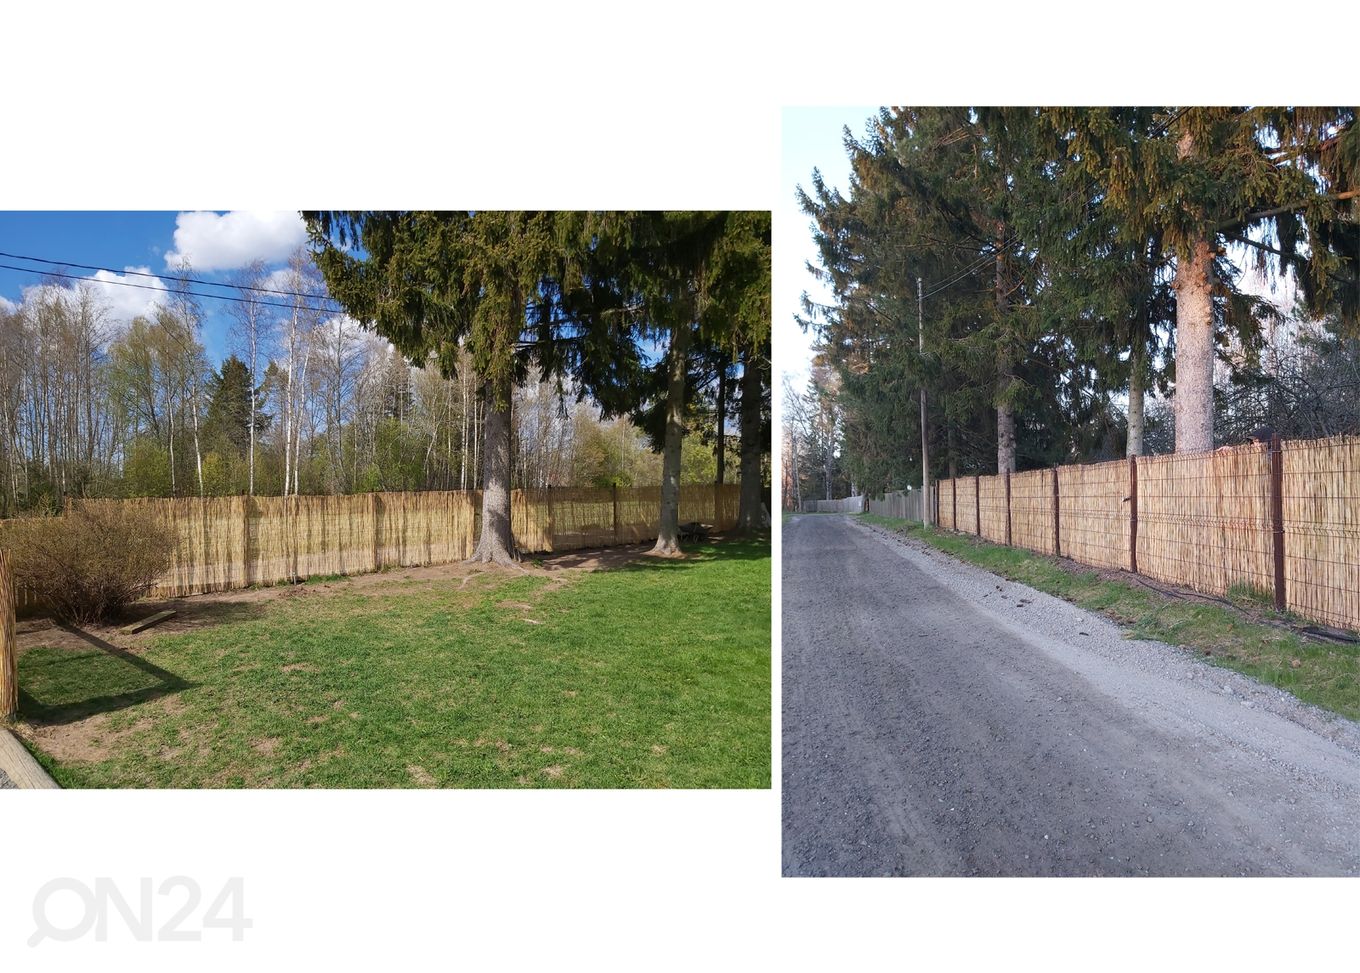 Тростниковый забор 1,5x6 m увеличить